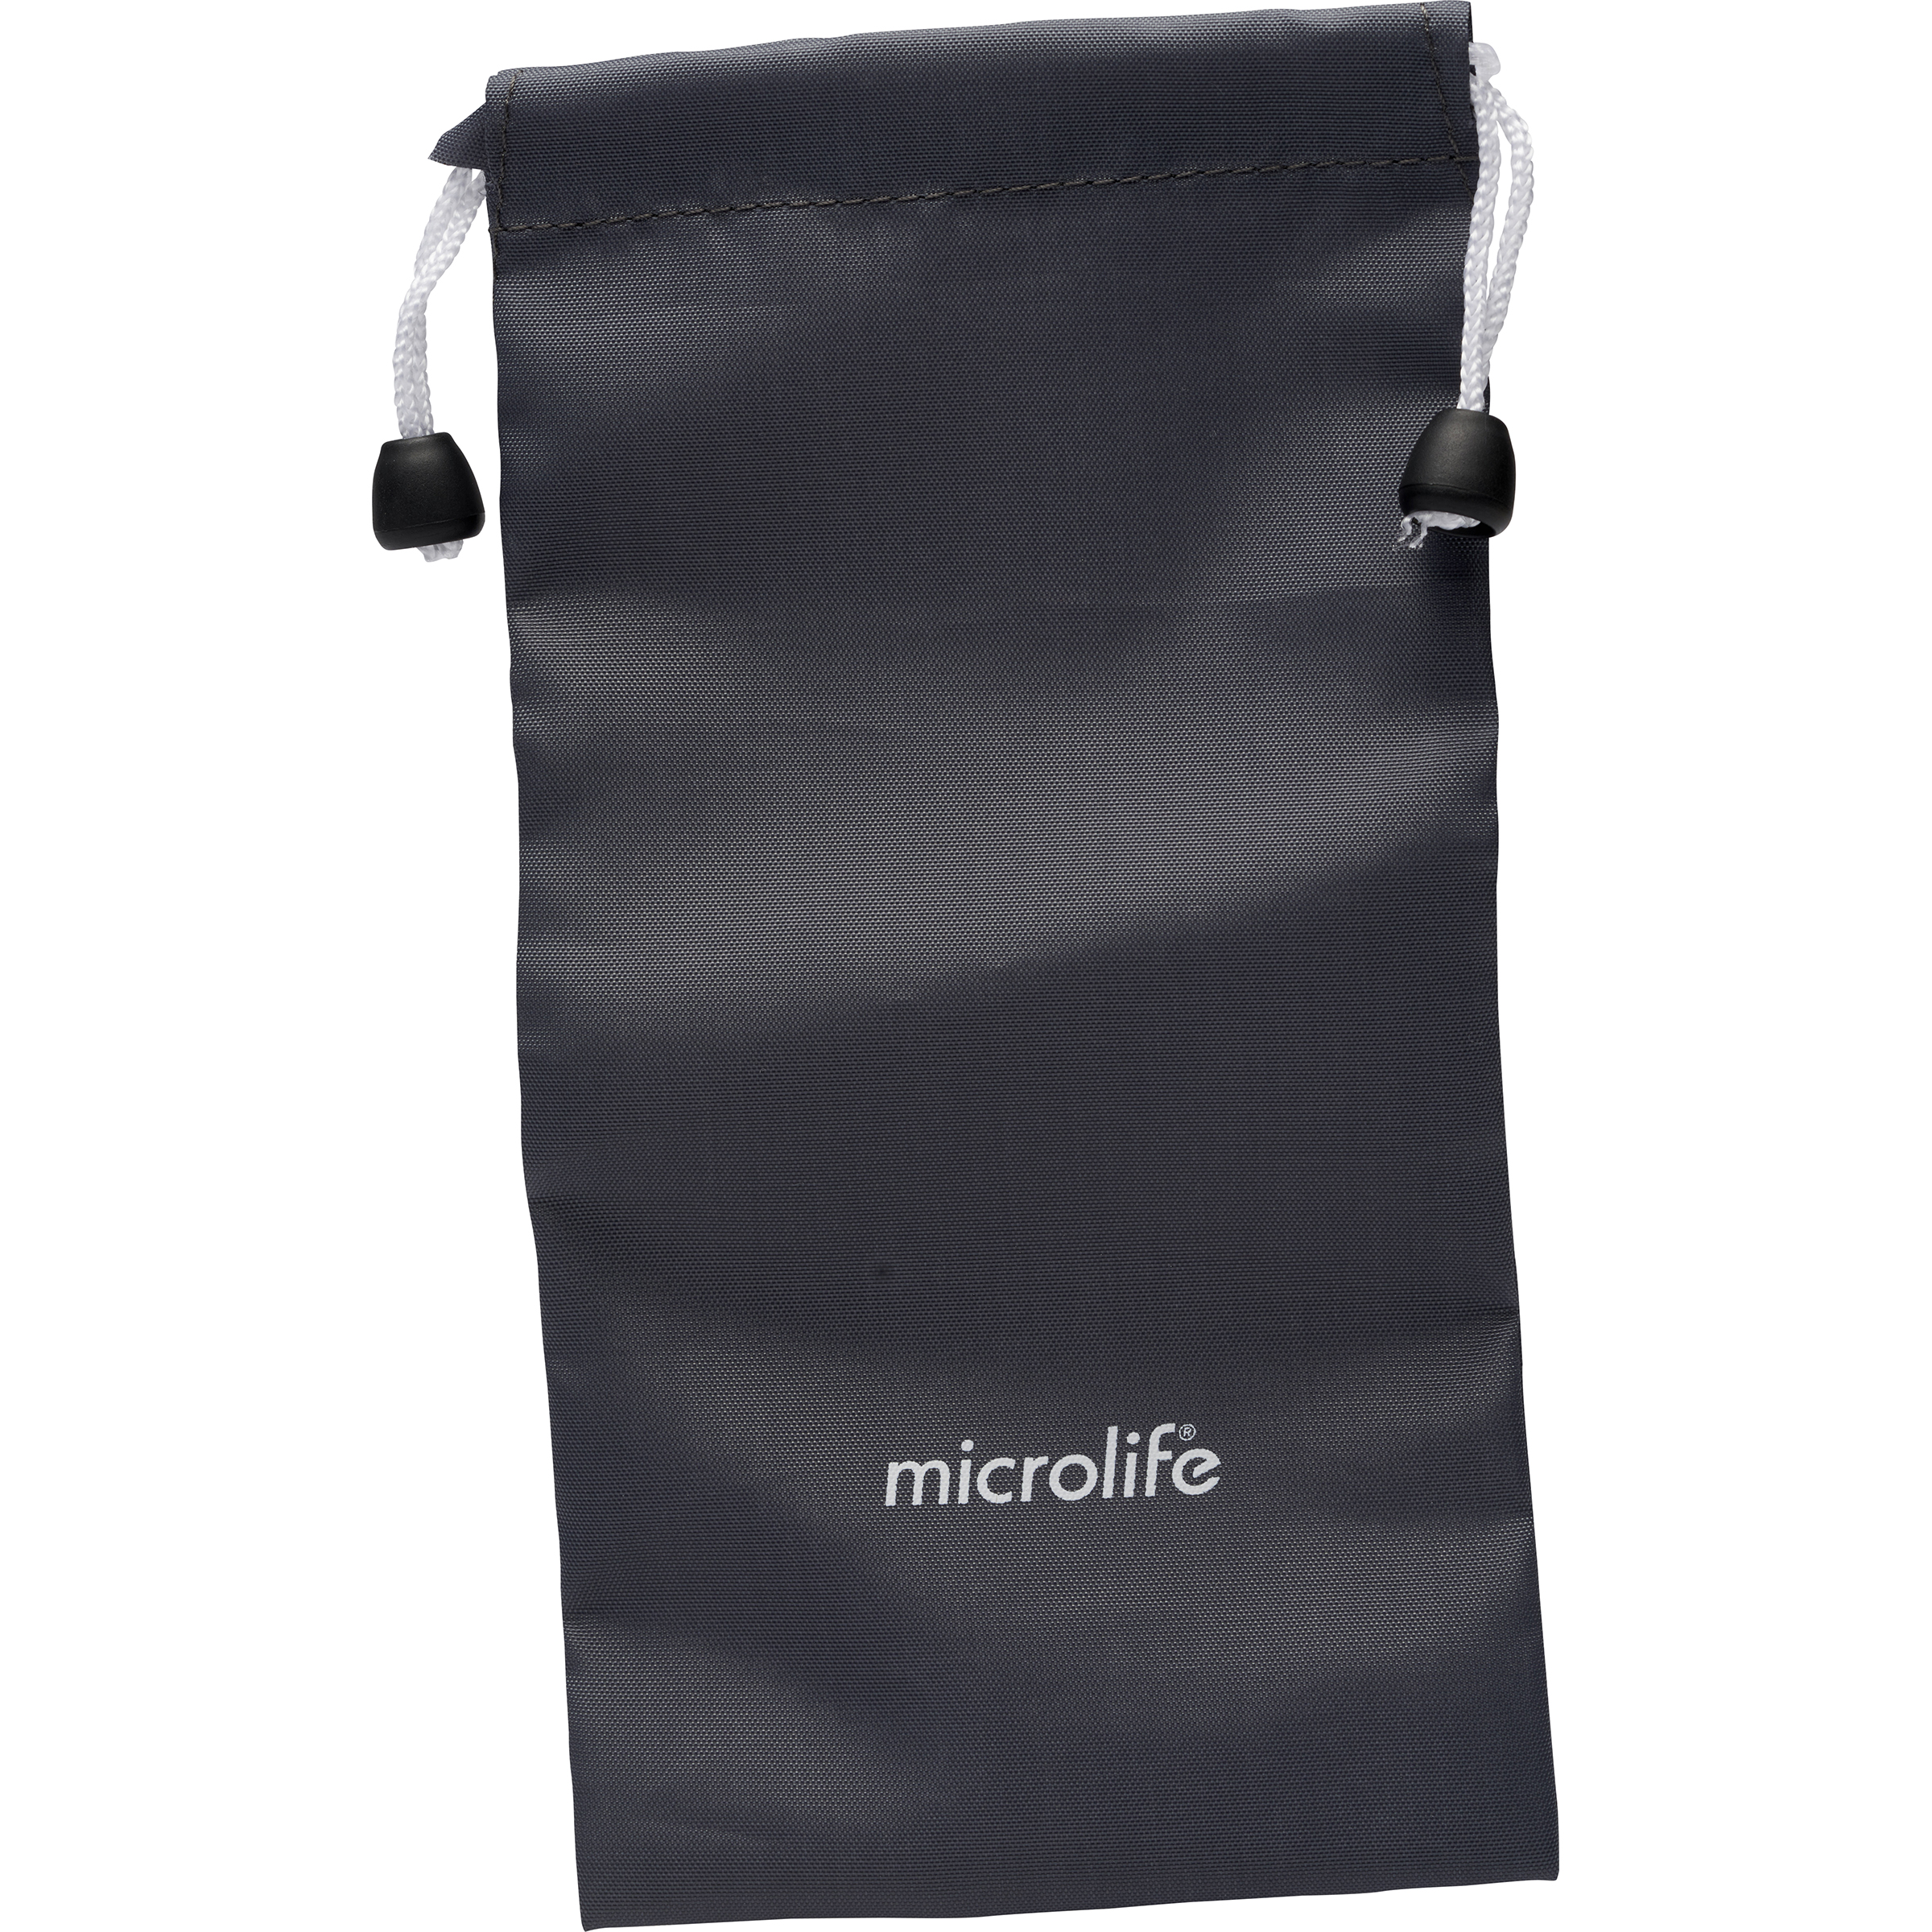 Microlife NC200 - 